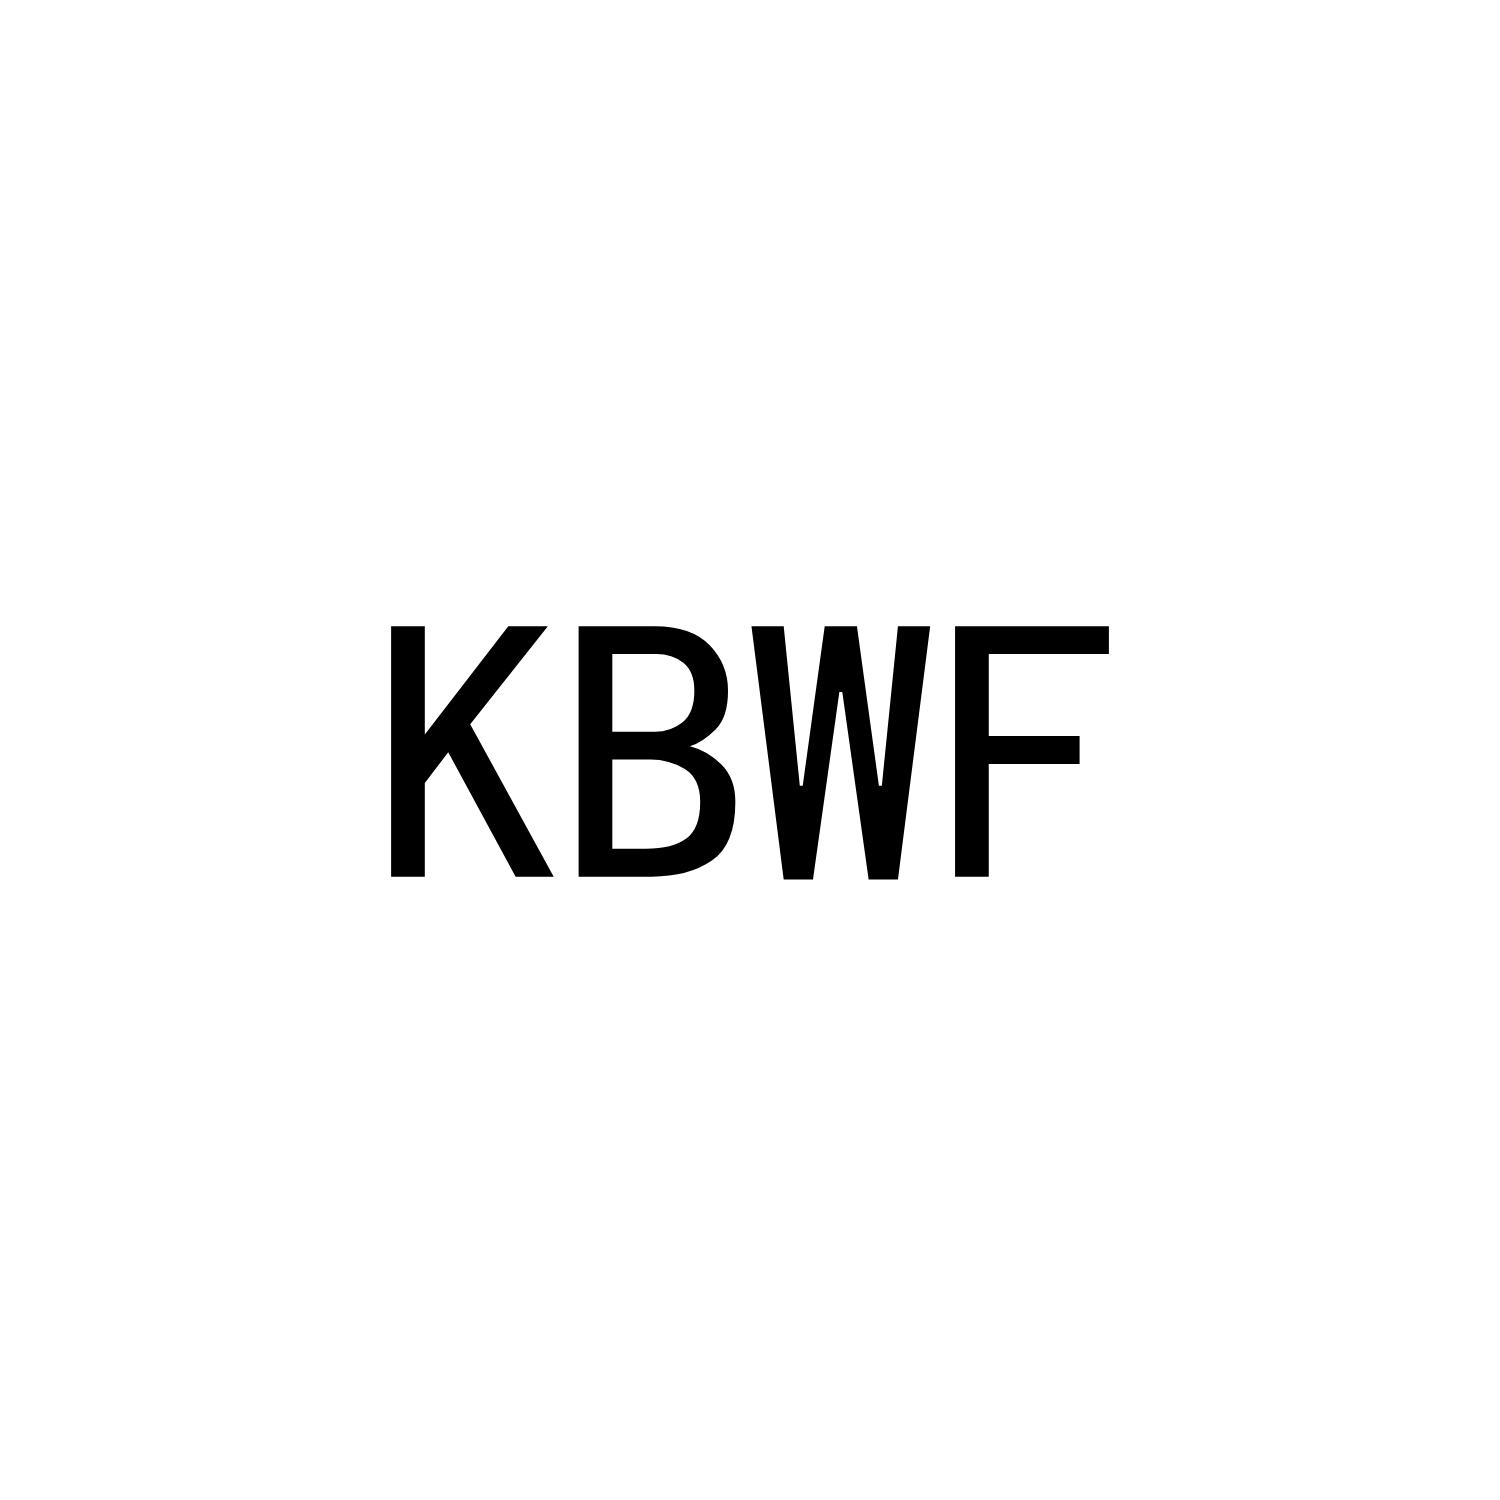 KBWF